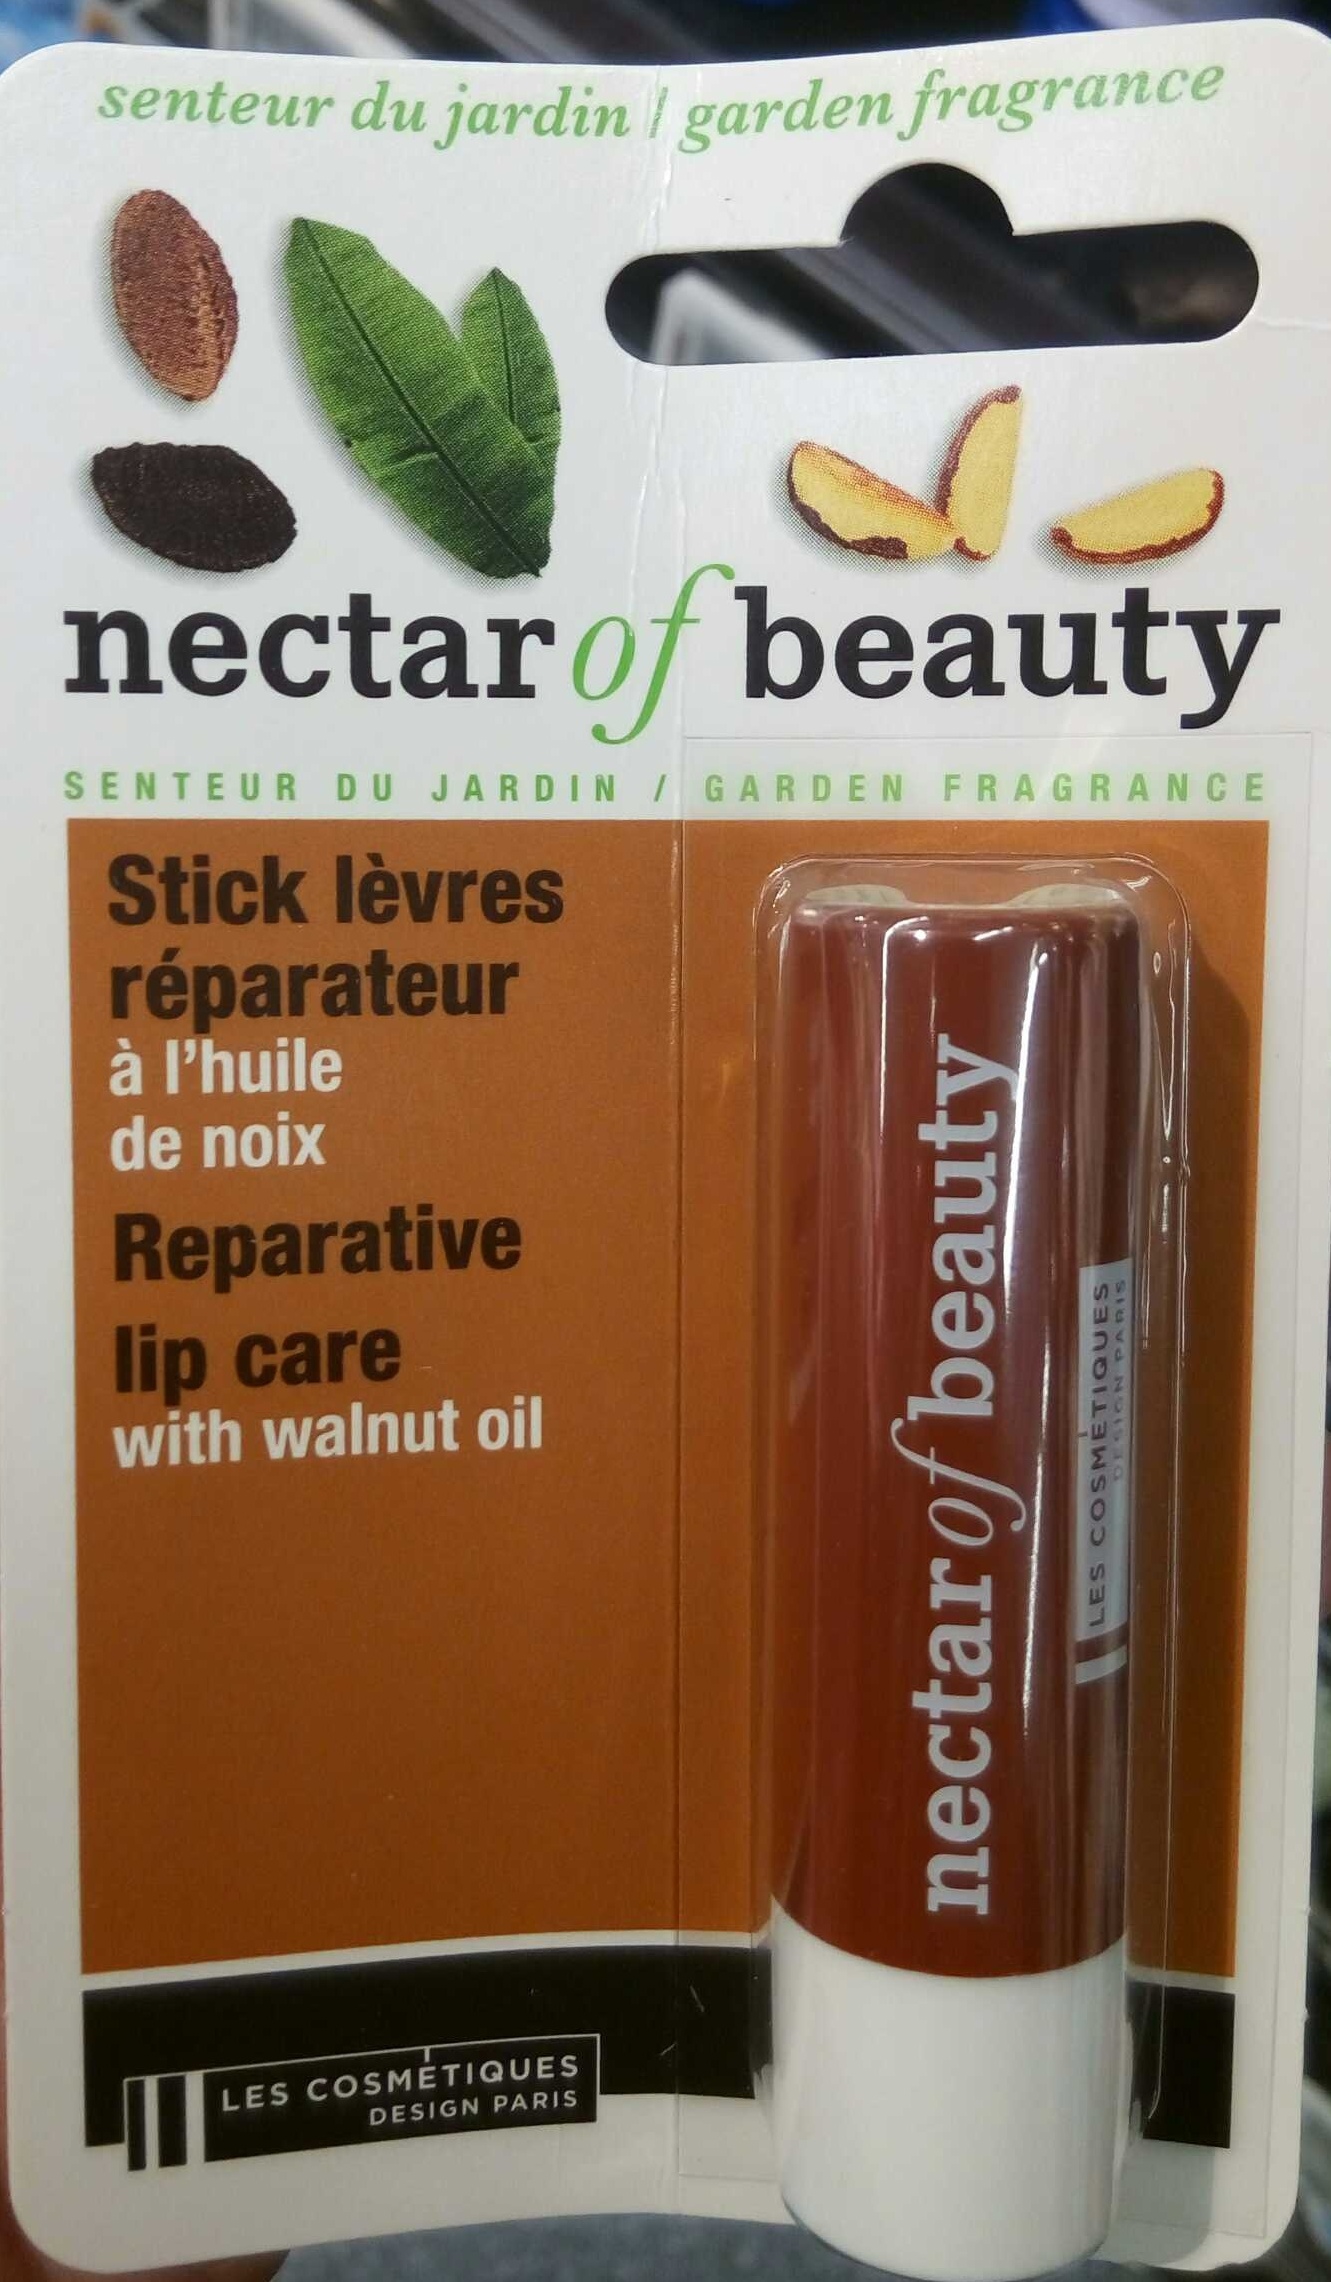 Stick lèvres réparateur à l'huile de noix - Product - fr